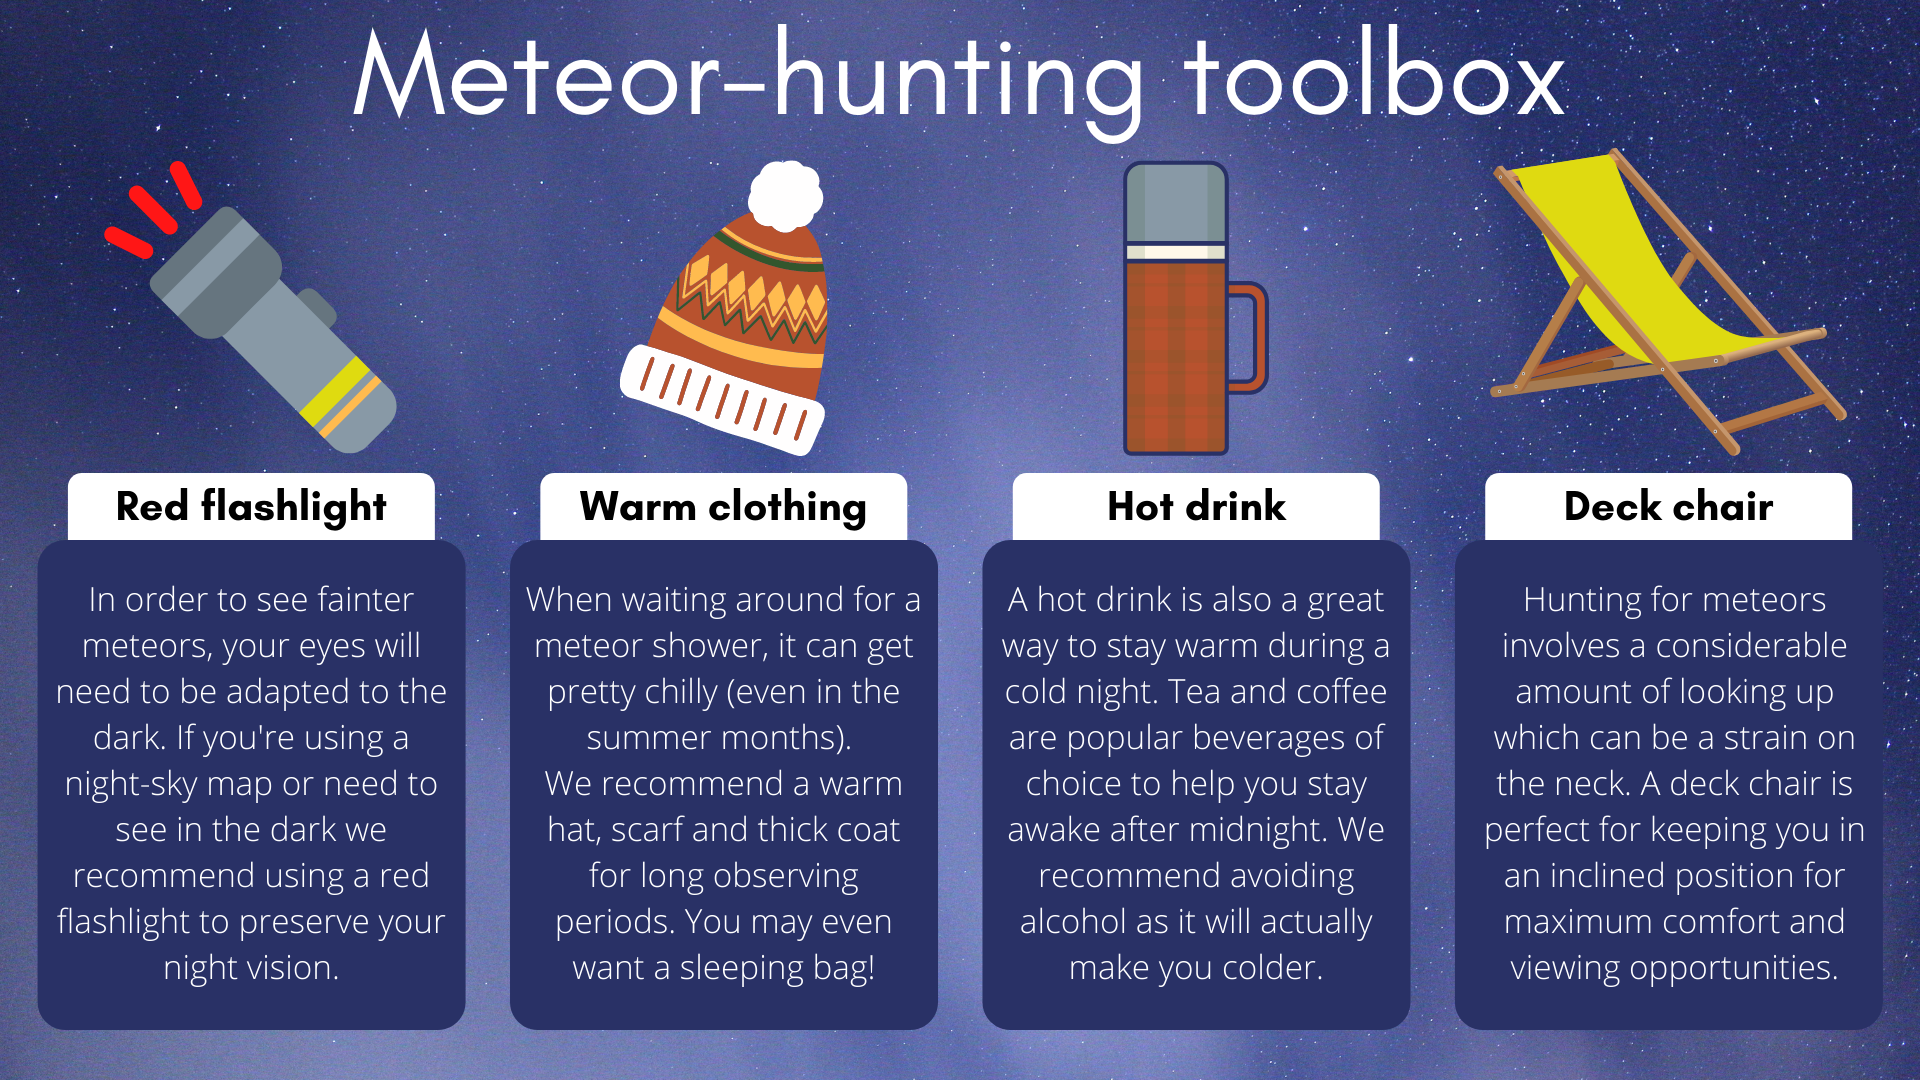 Für das perfekte Meteoritenjagd-Erlebnis benötigen Sie eine Referenz-Taschenlampe, warme Kleidung, ein heißes Getränk und einen schönen Liegestuhl.